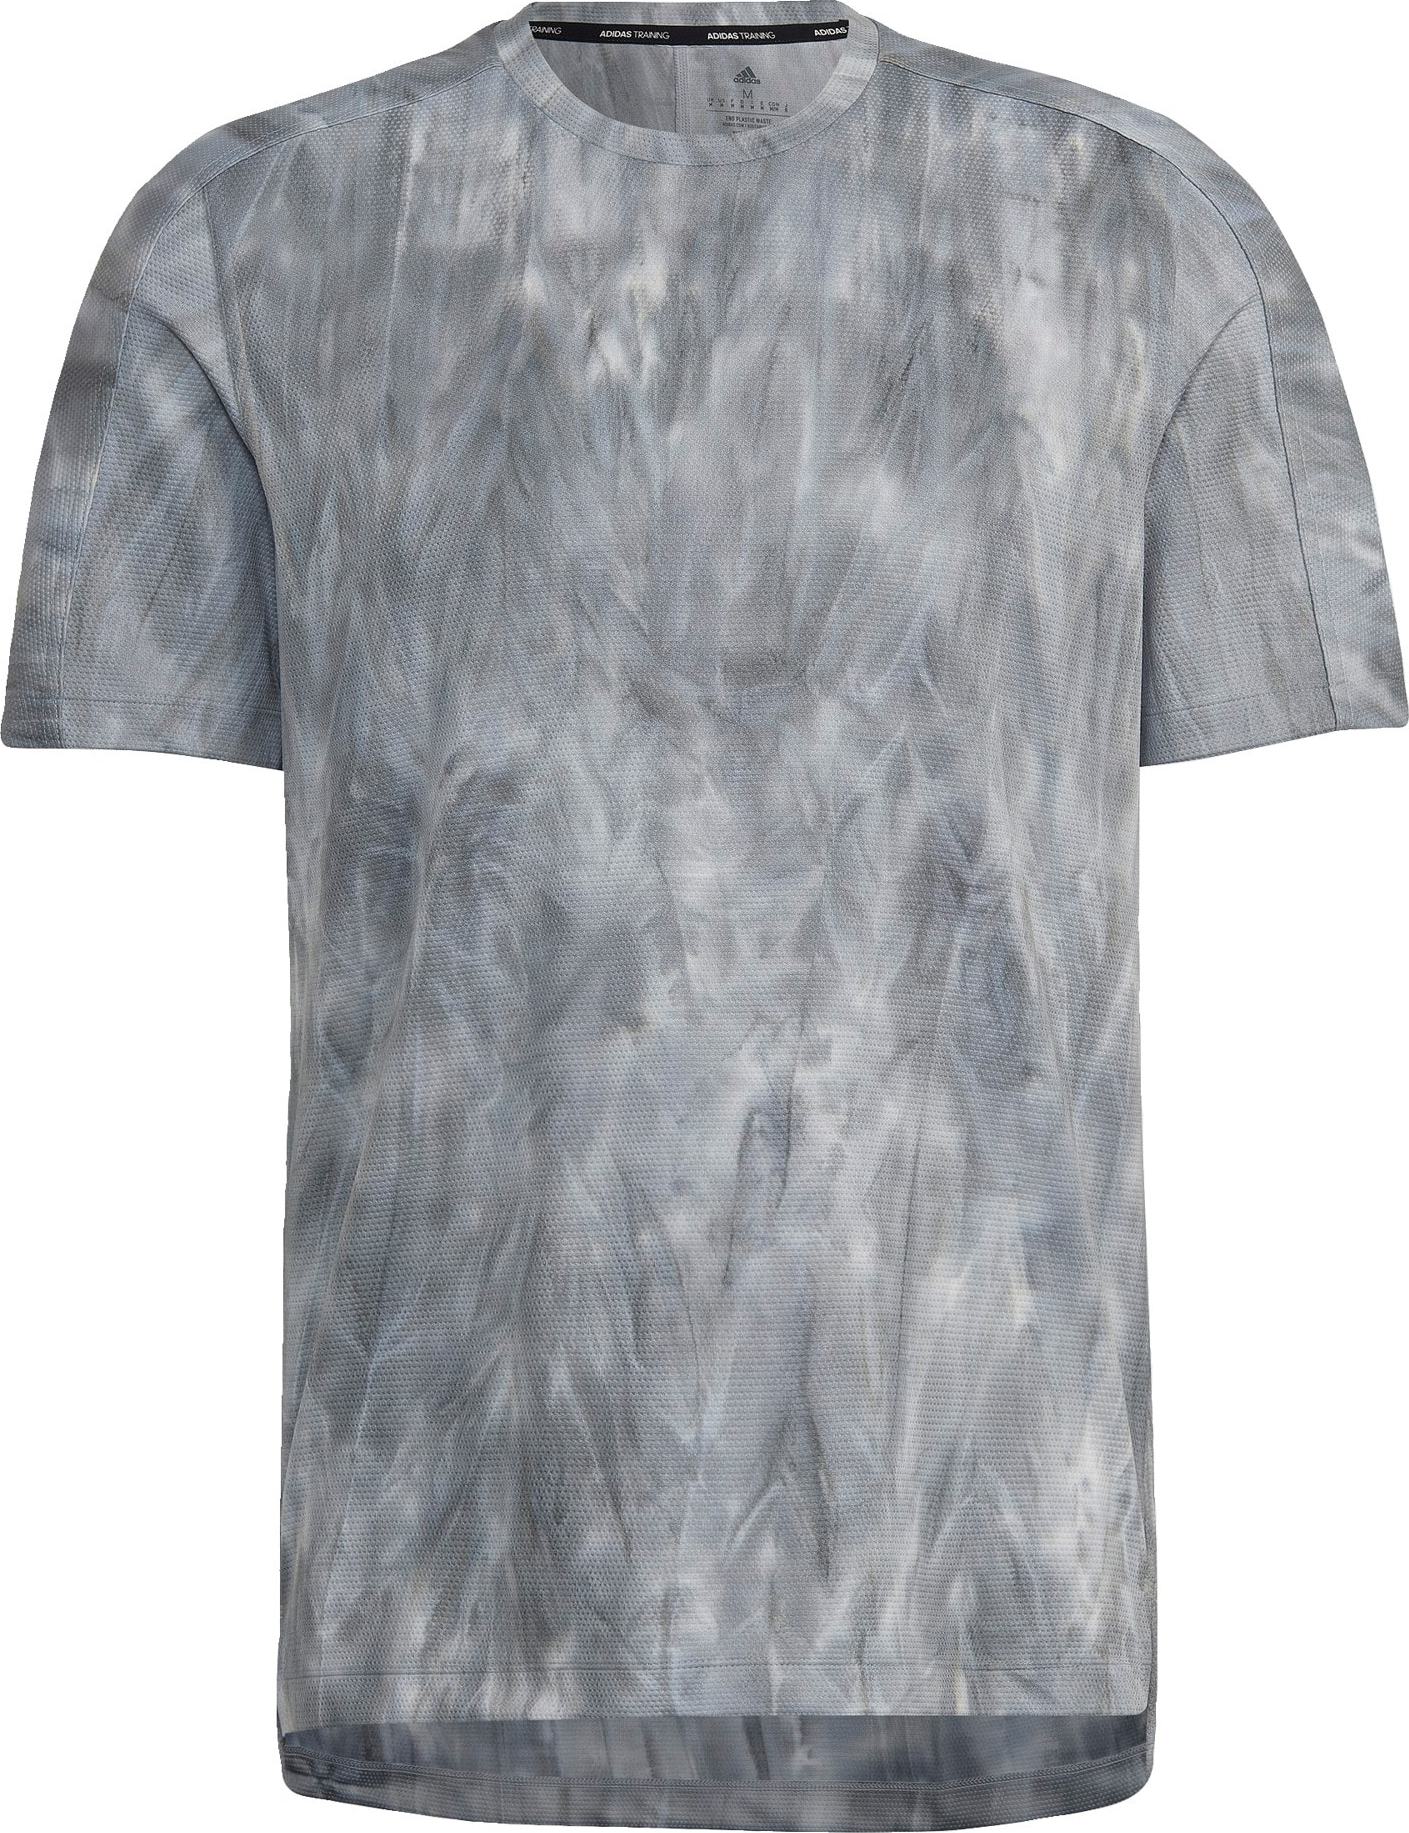 ADIDAS SPORTSWEAR Funkční tričko šedá / světle šedá / černá